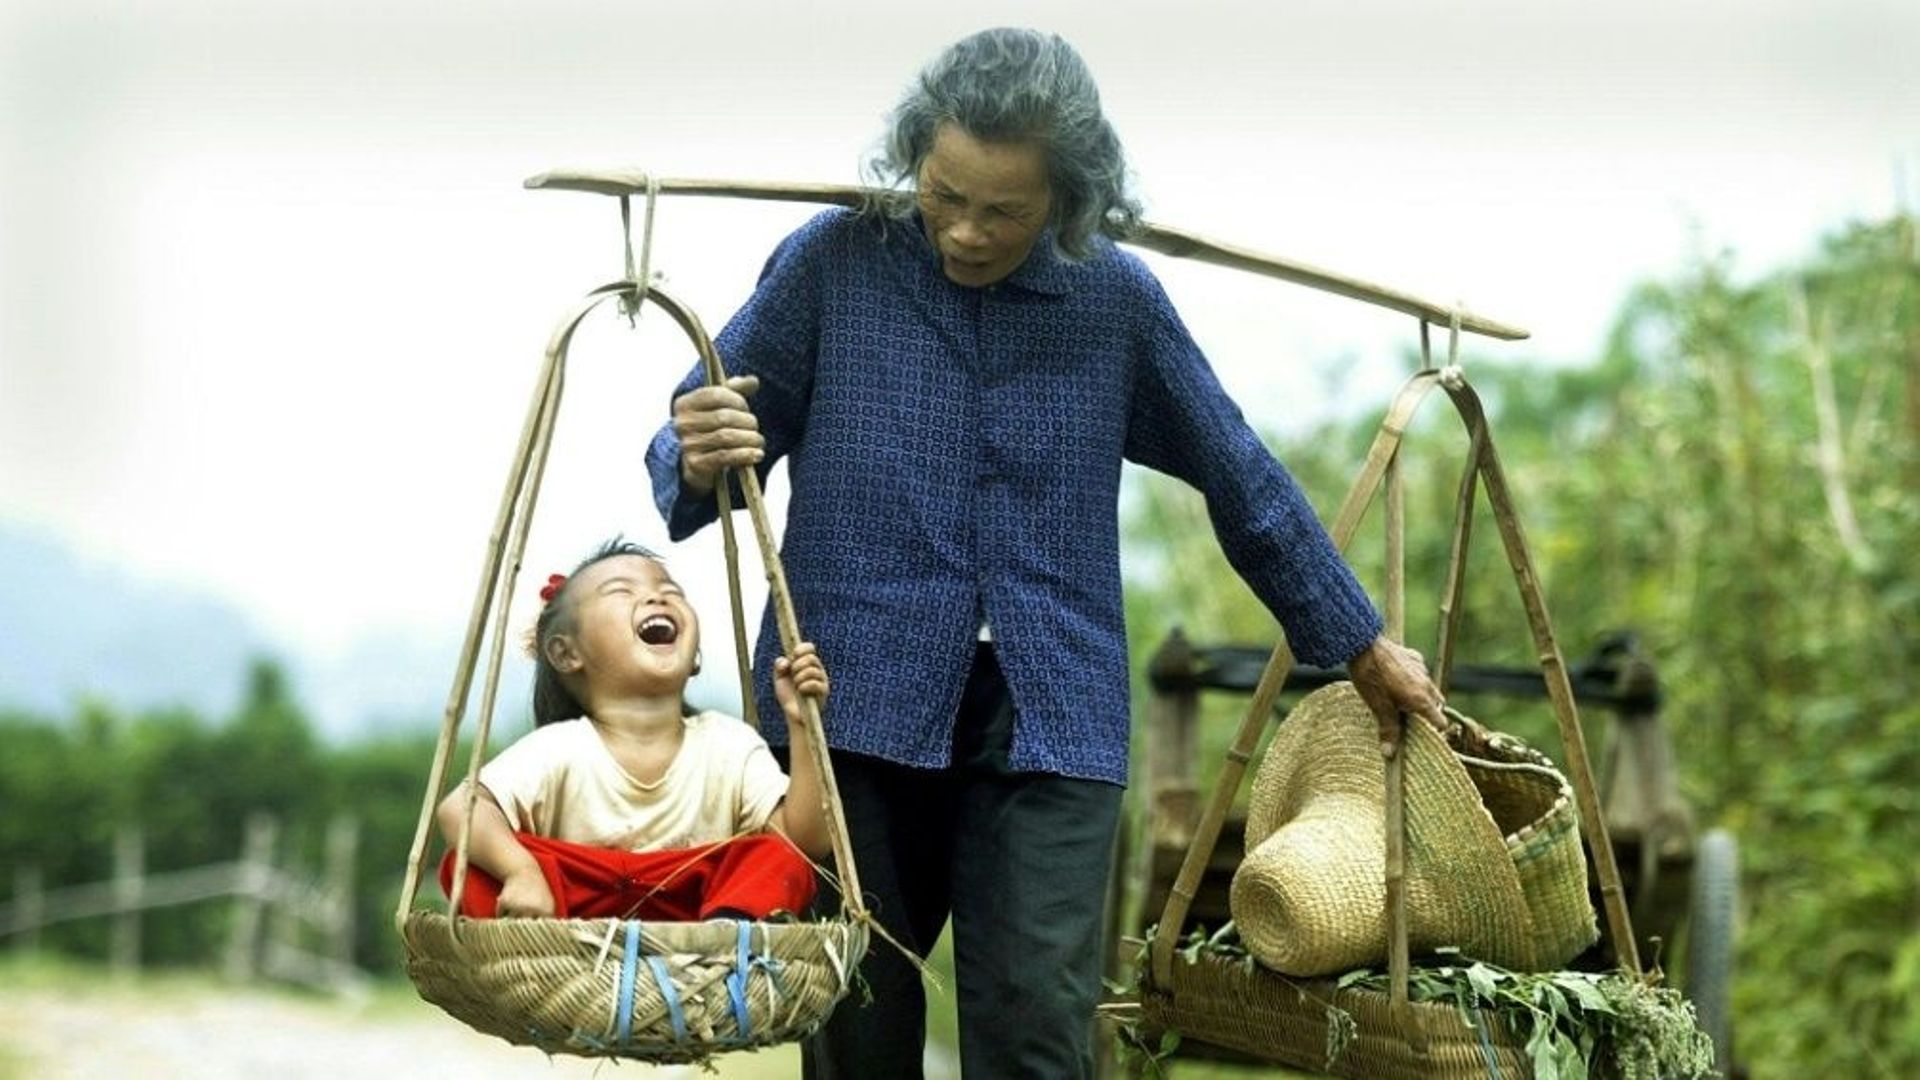 Une grand-mère et sa petite-fille dans le sud de la Chine en 2003